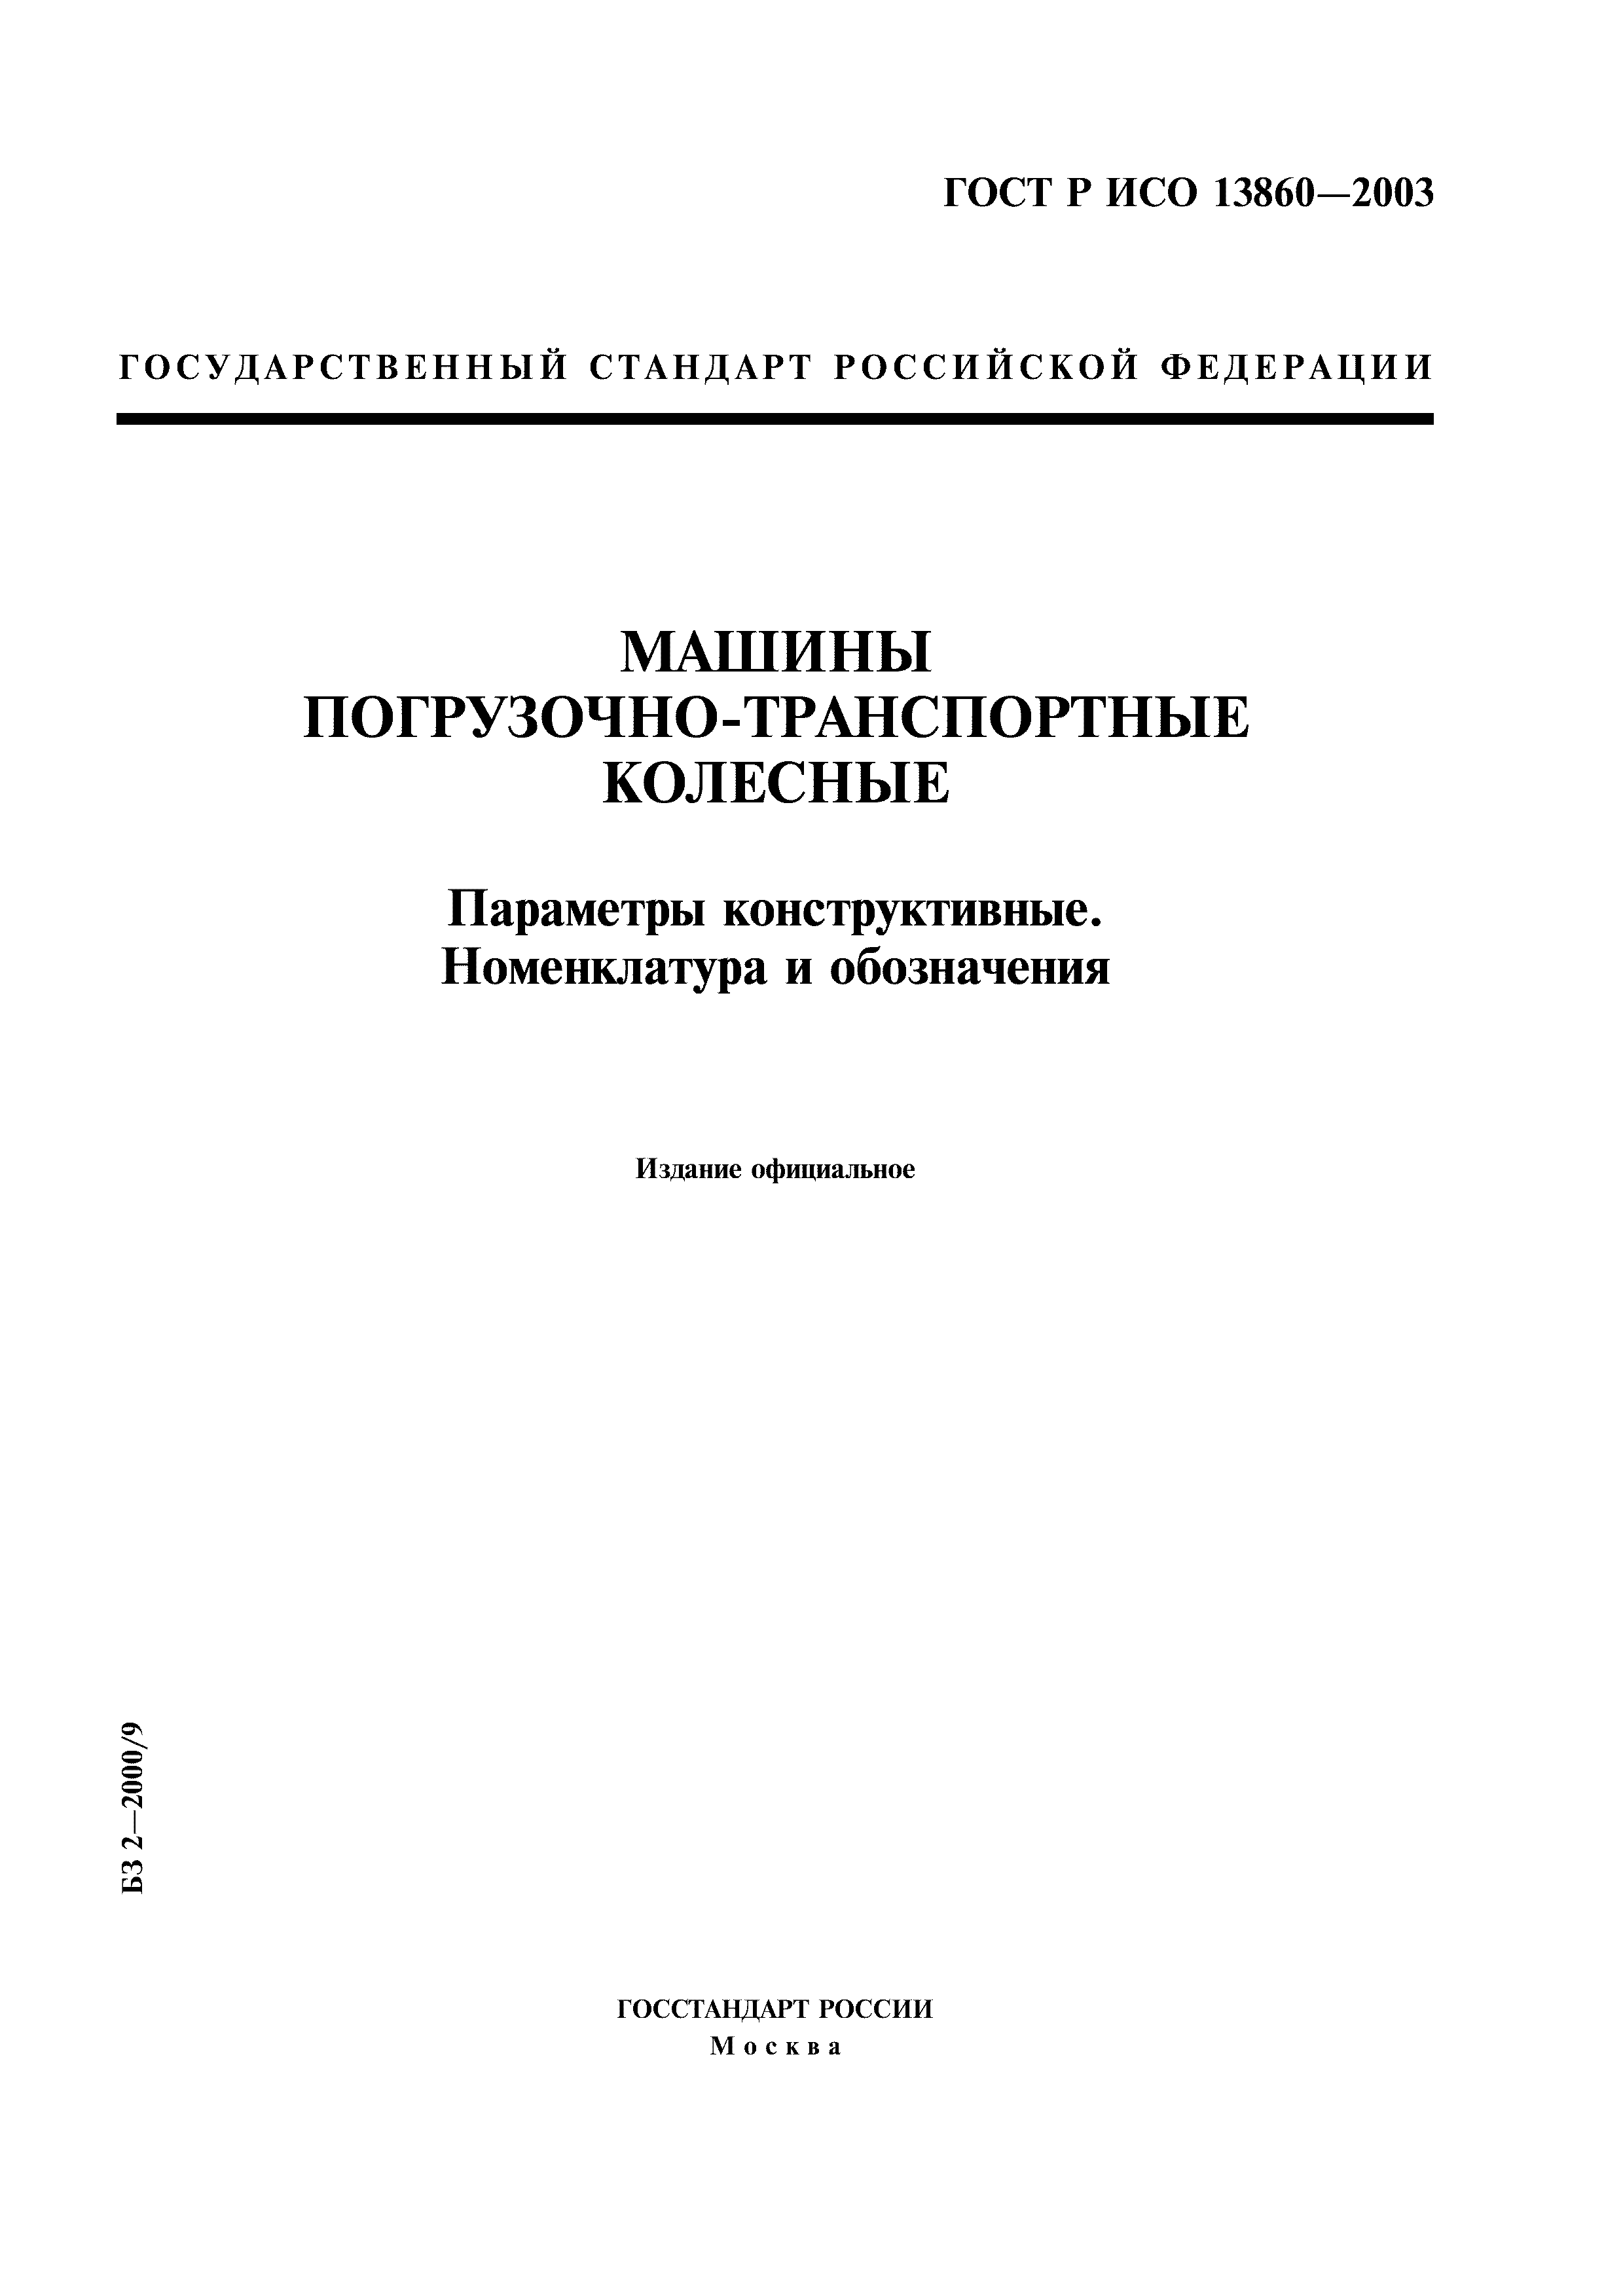 ГОСТ Р ИСО 13860-2003